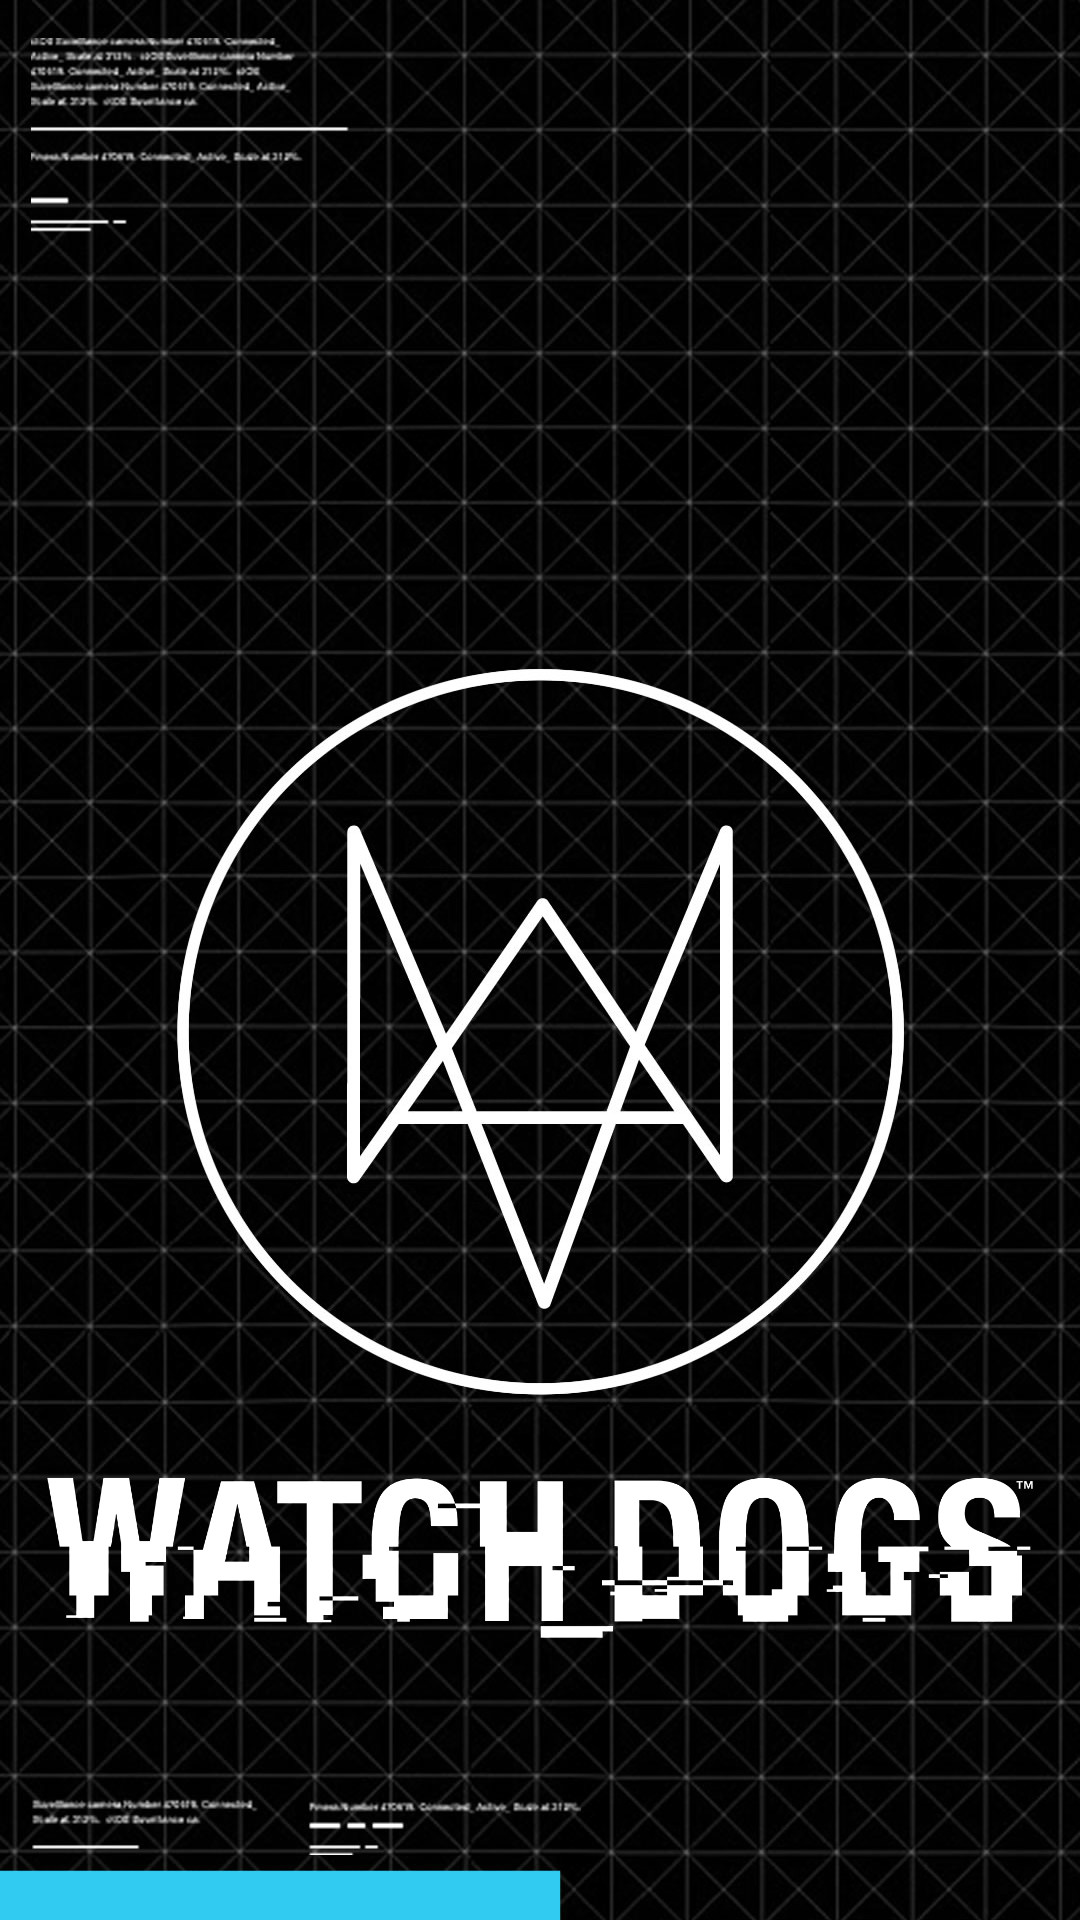 watch dogs logo wallpaper,schriftart,text,grafik,muster